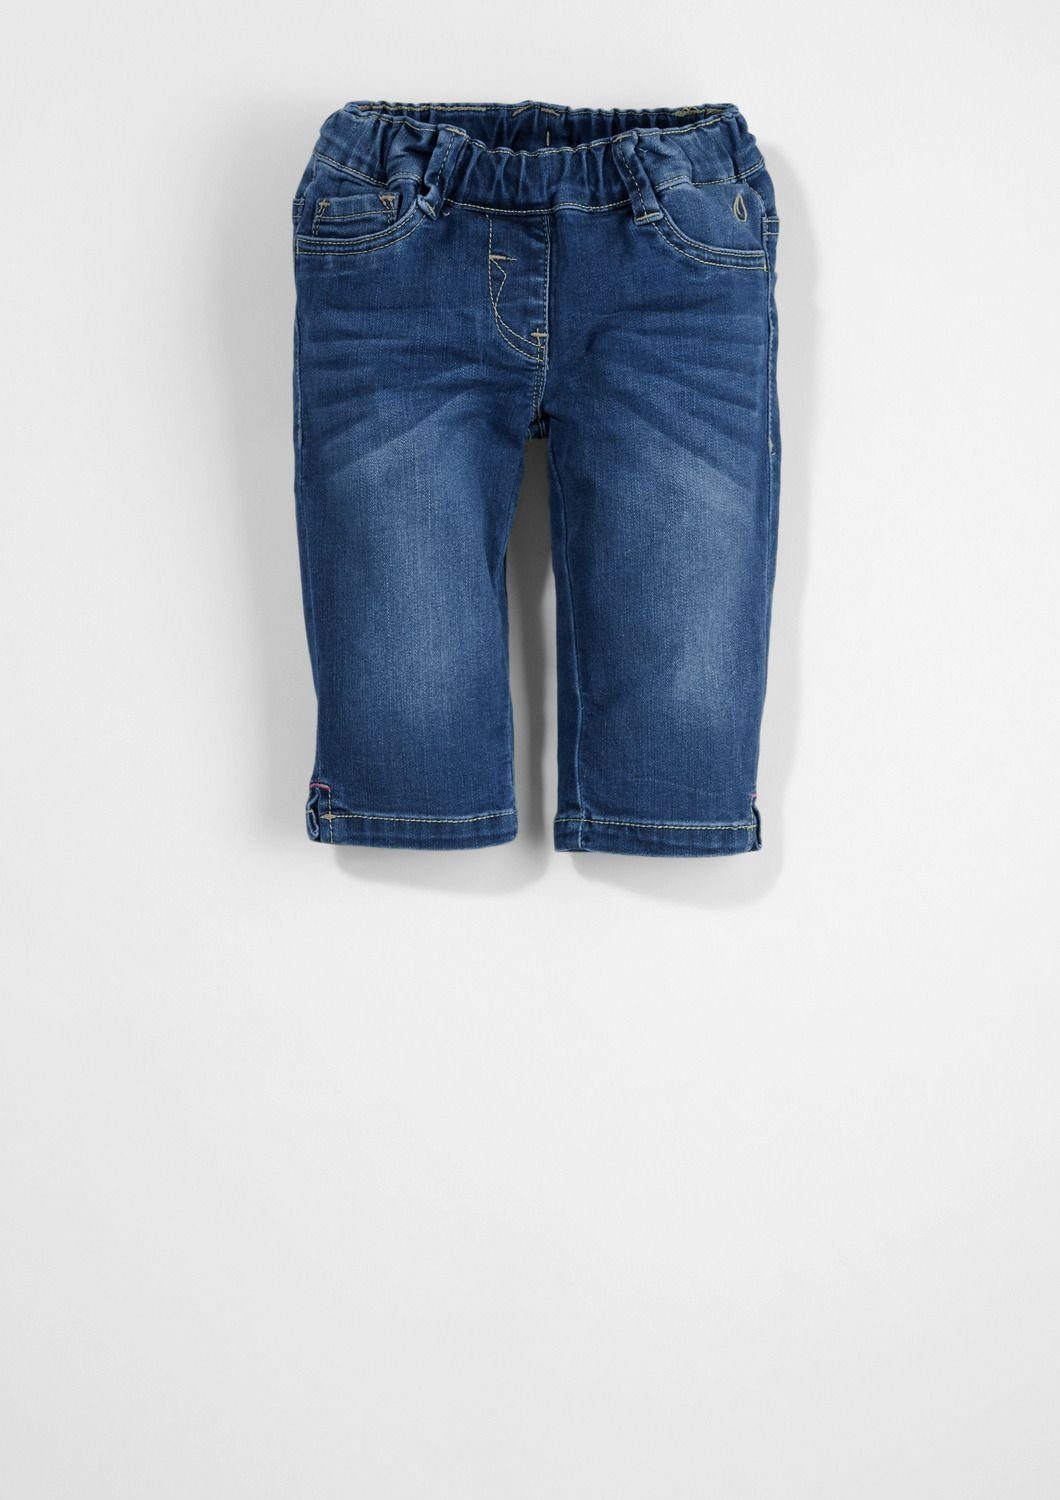 [100% Qualitätsgarantie] s.Oliver Junior 5-Pocket-Jeans